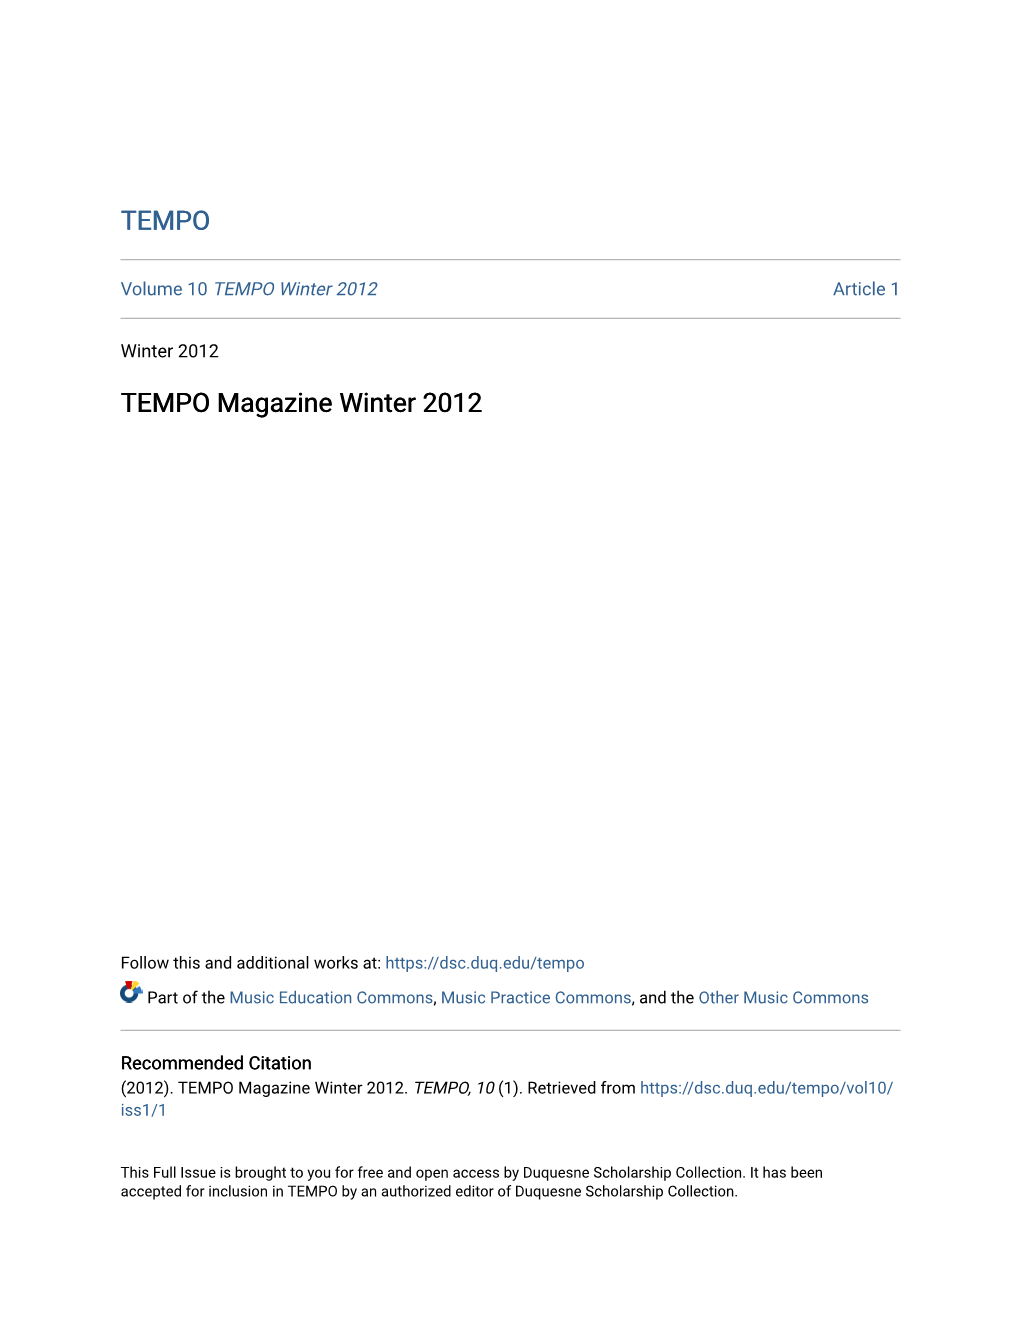 TEMPO Magazine Winter 2012